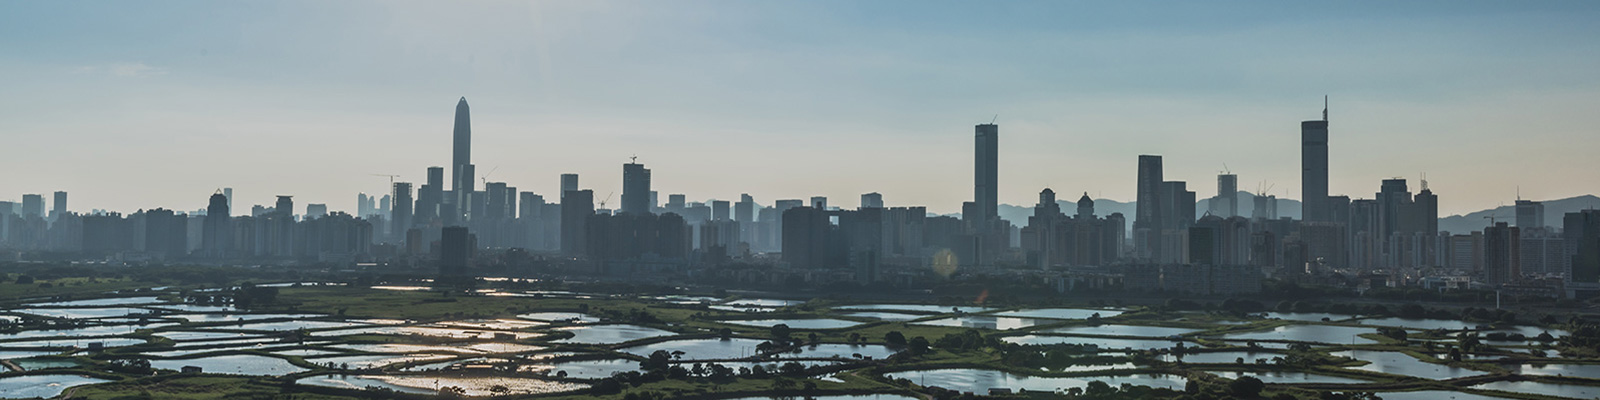 View of the Shenzhen skyline